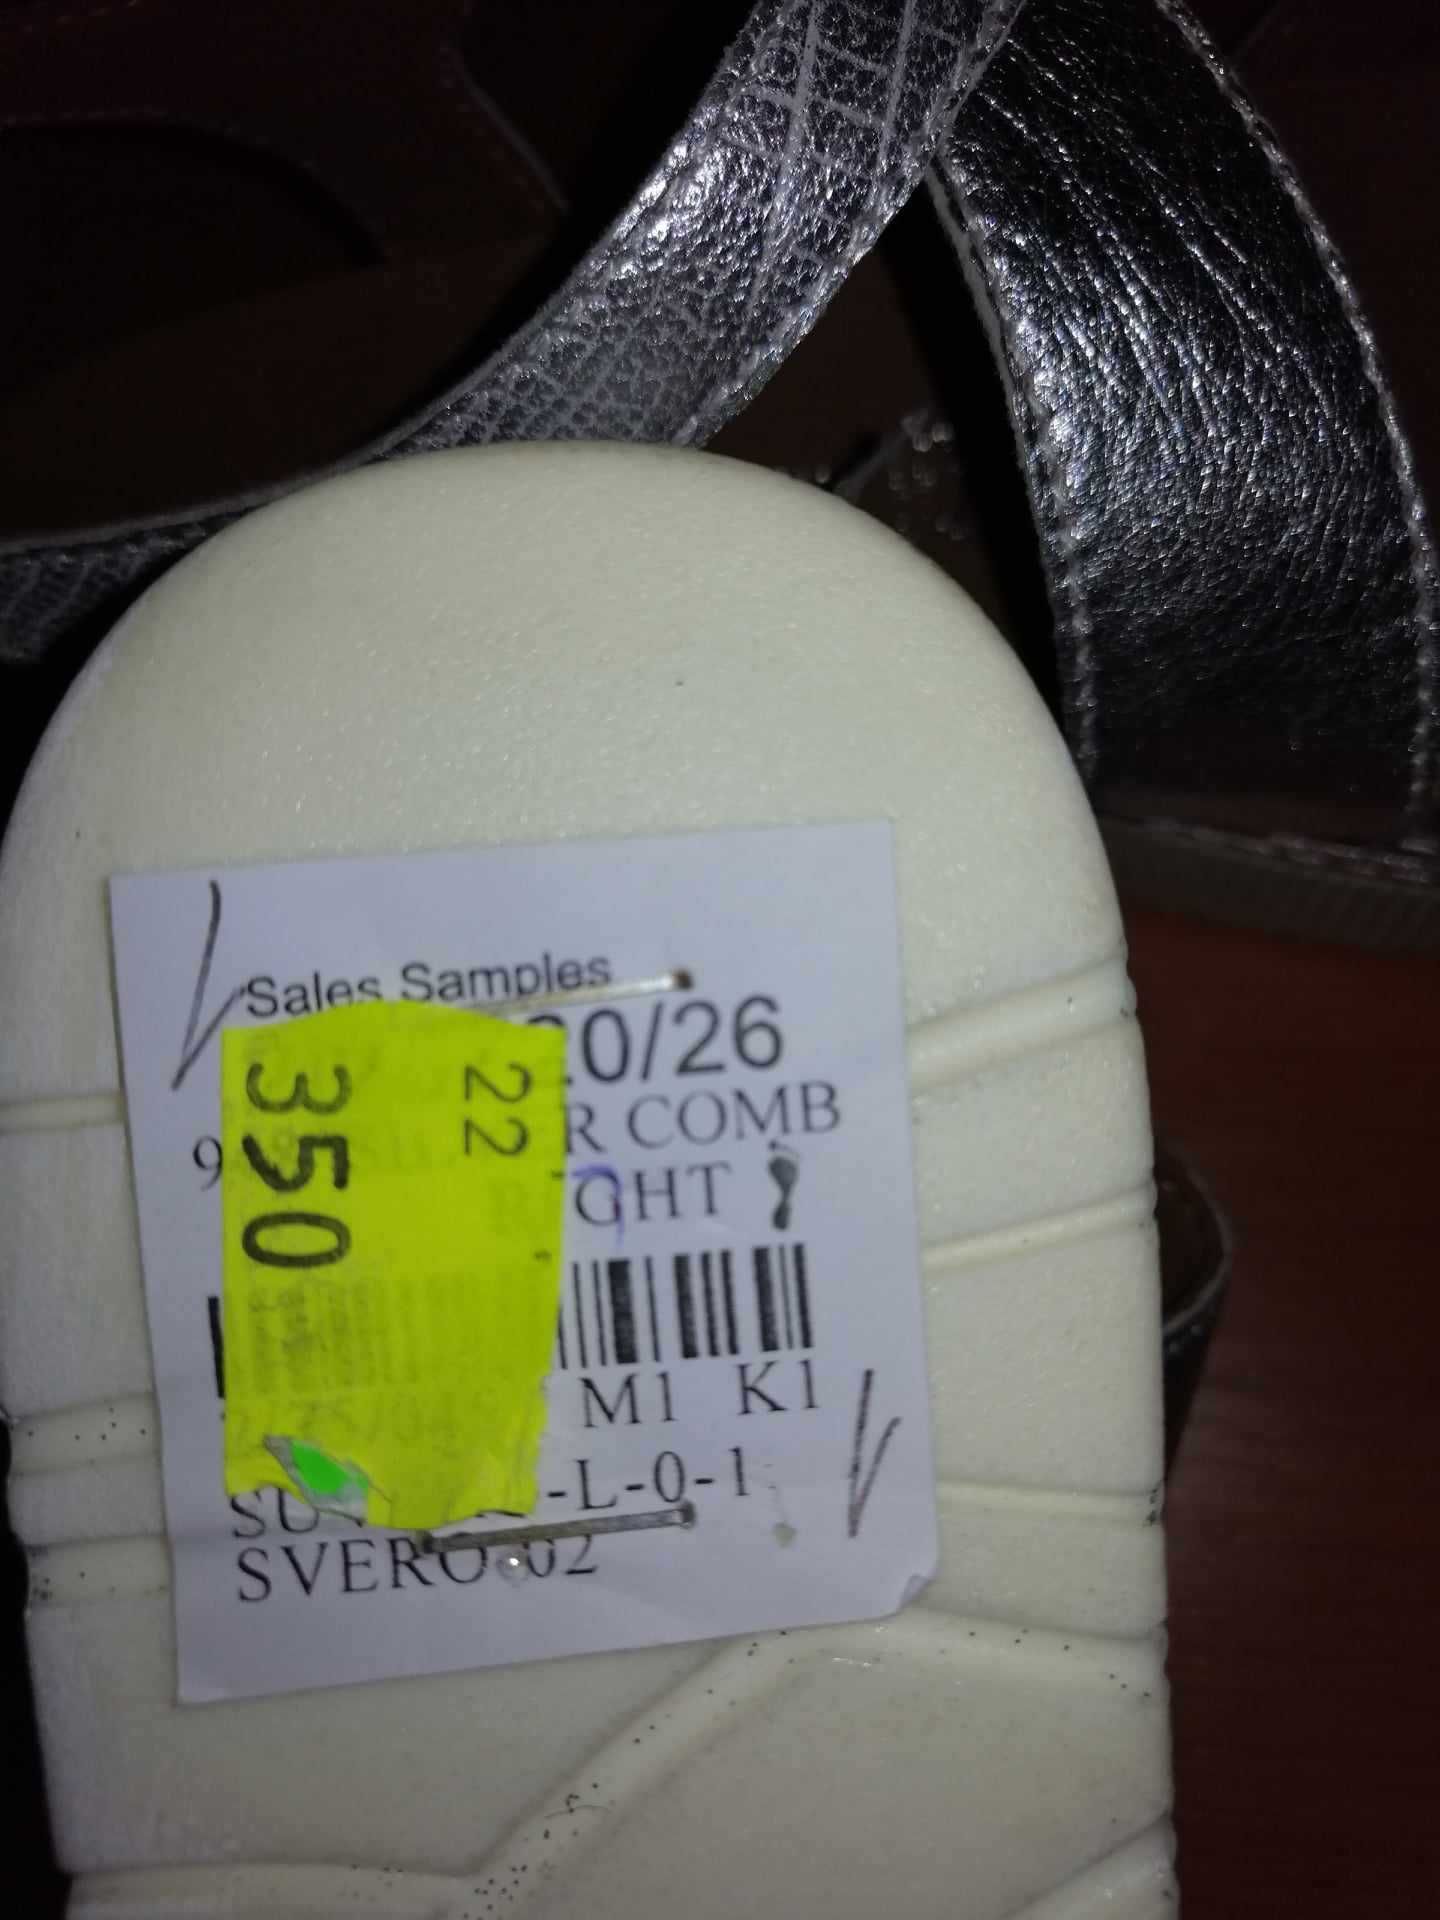 Sandale dama piele naturala Marco Tozzi argintiu noi cu eticheta 37